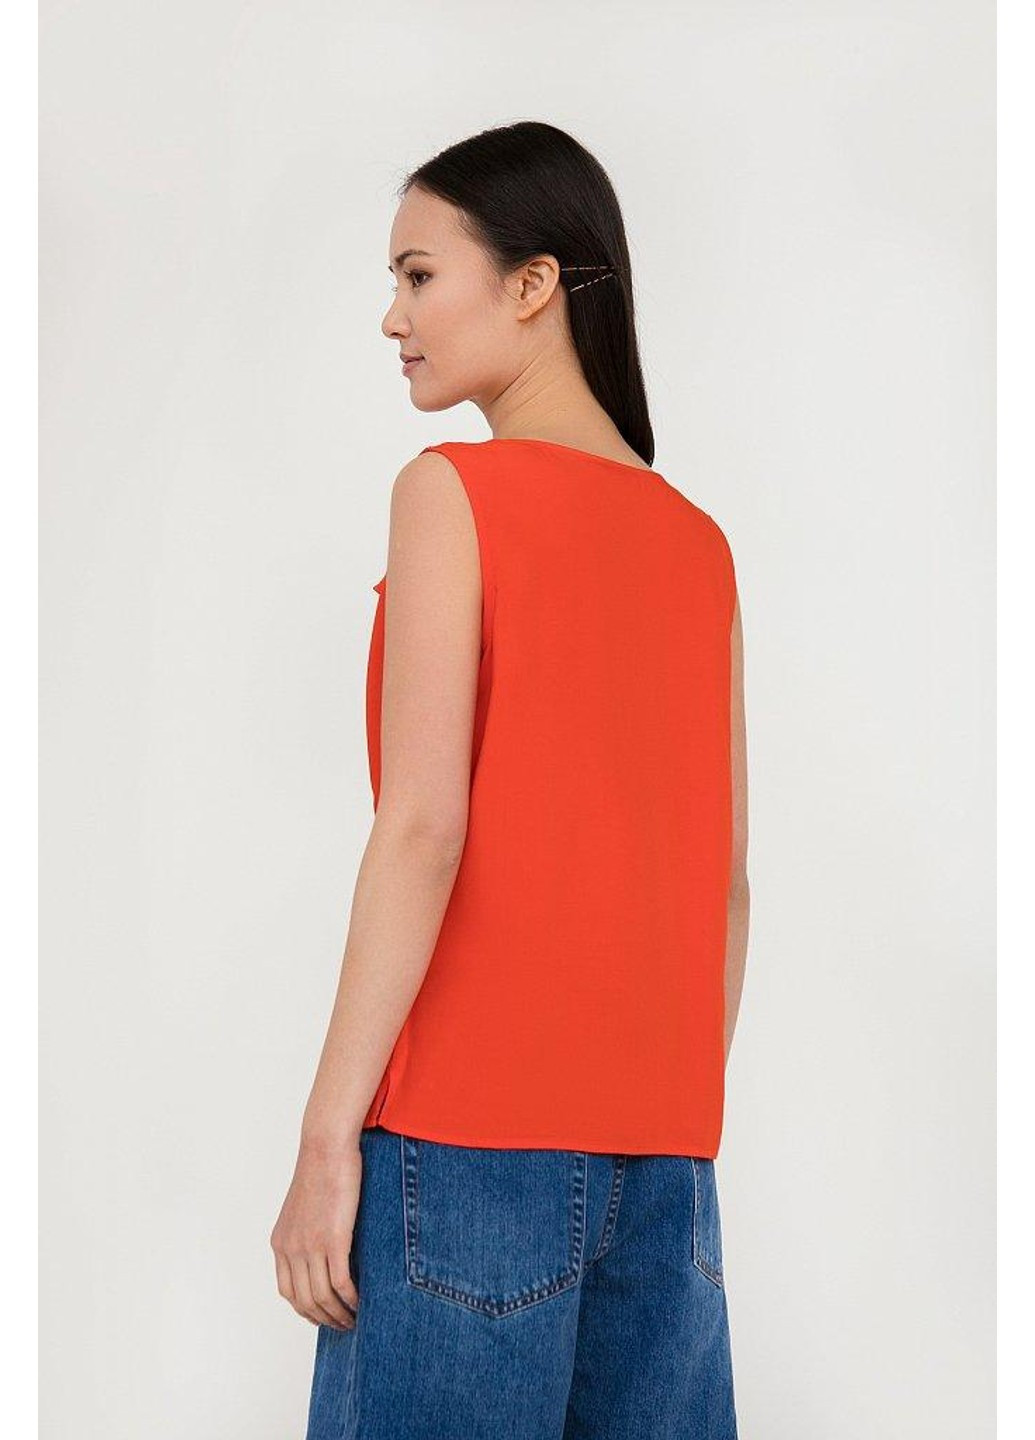 Красная летняя блуза s20-14015-420 Finn Flare